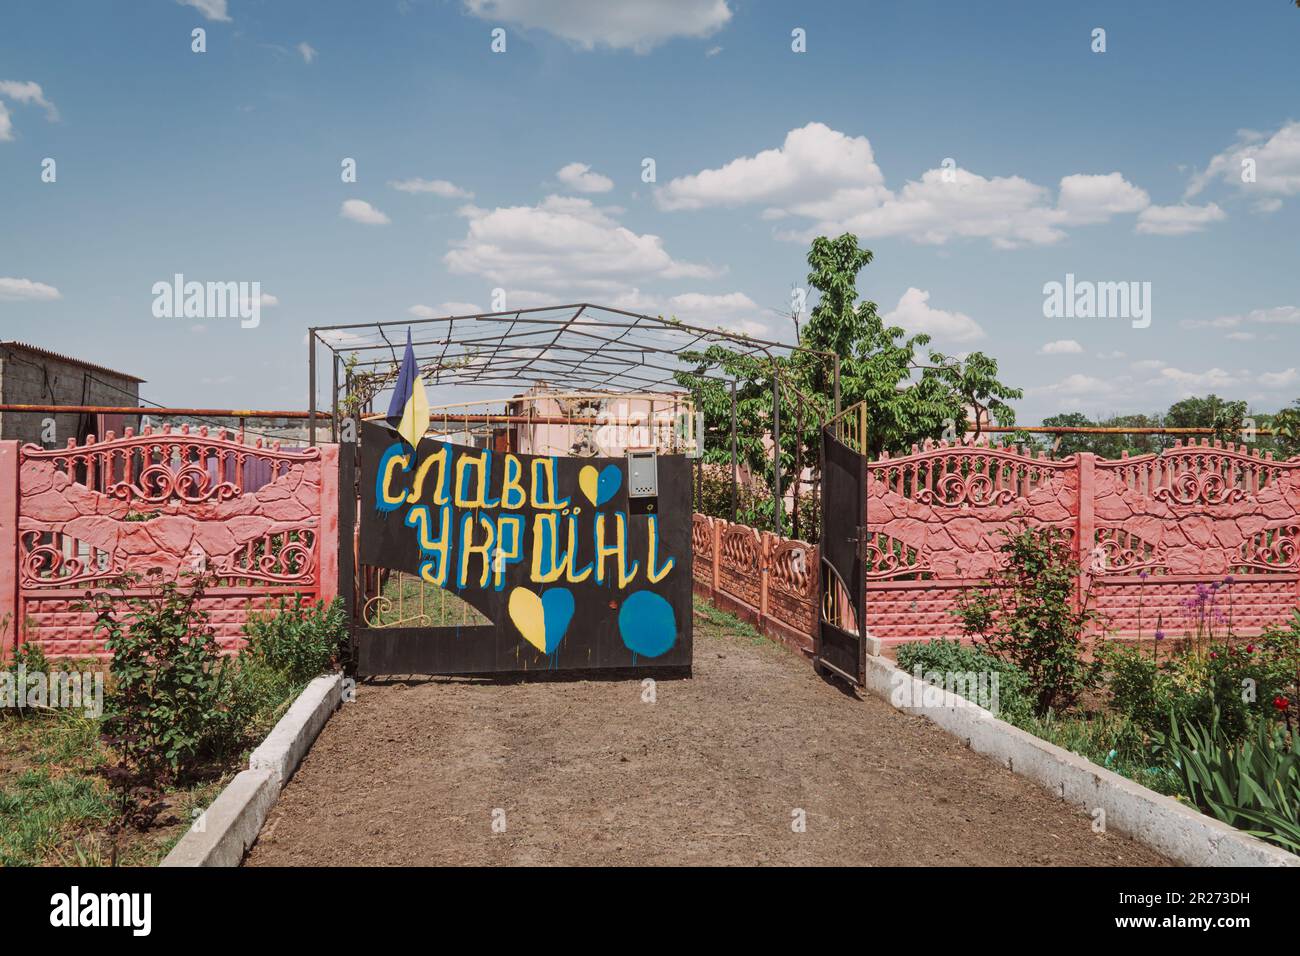 Krieg in der Ukraine. Der Zaun eines Hauses, zerstört durch Beschuss auf dem Land. Übersetzung der Inschrift auf dem Zaun - Ruhm für die Ukraine Stockfoto